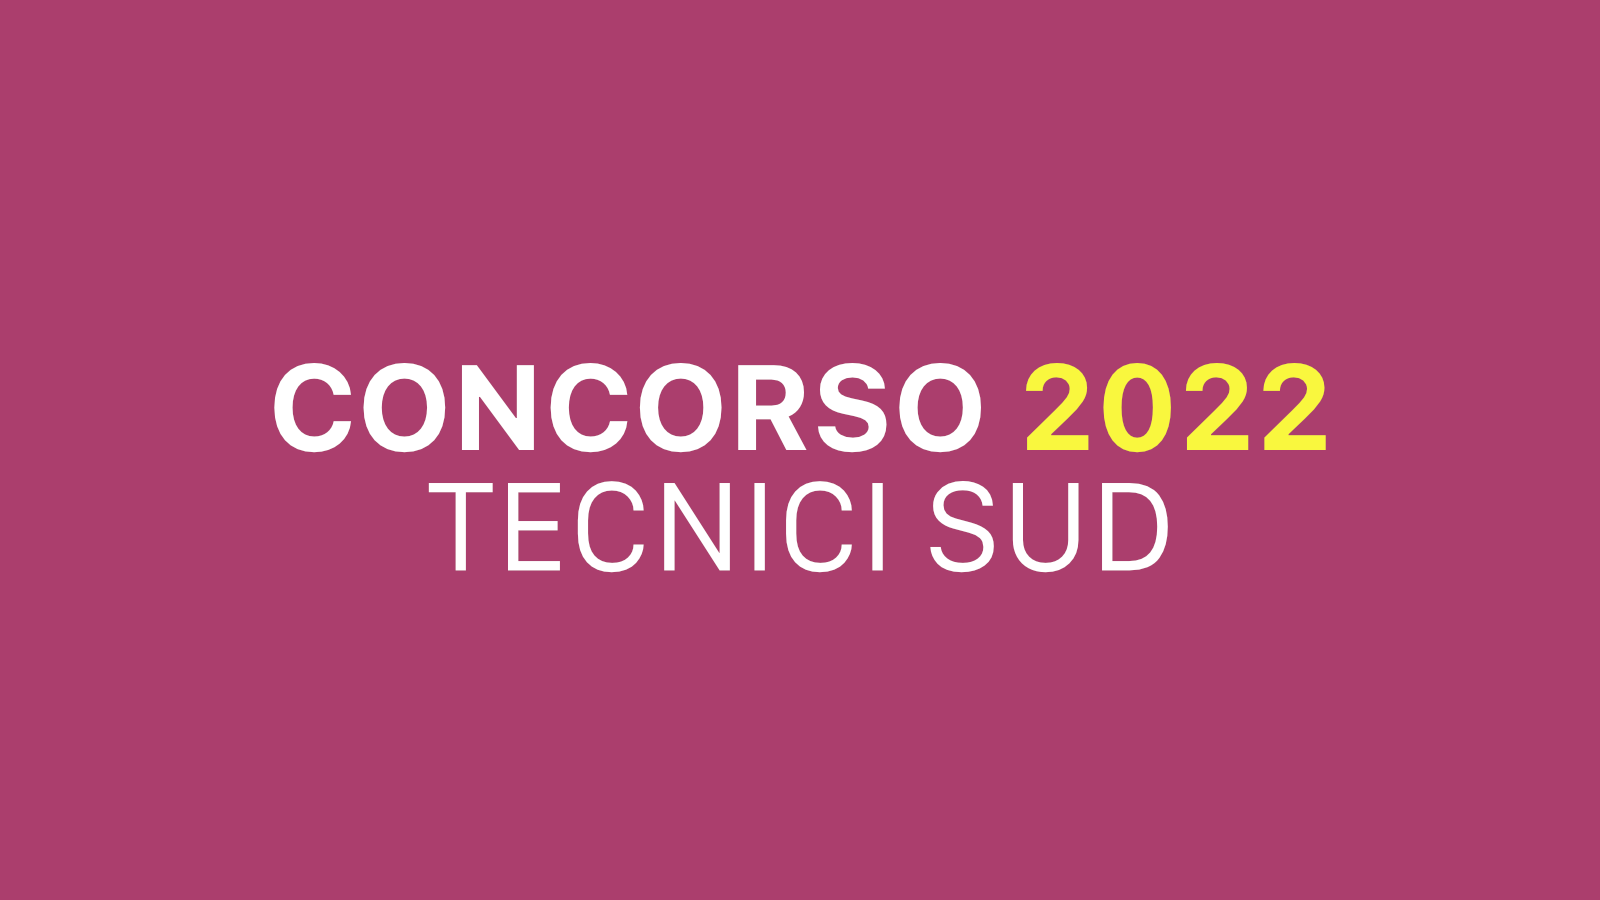  2022 funzionari laureati a tempo determinato - Concorso COESIONE SUD